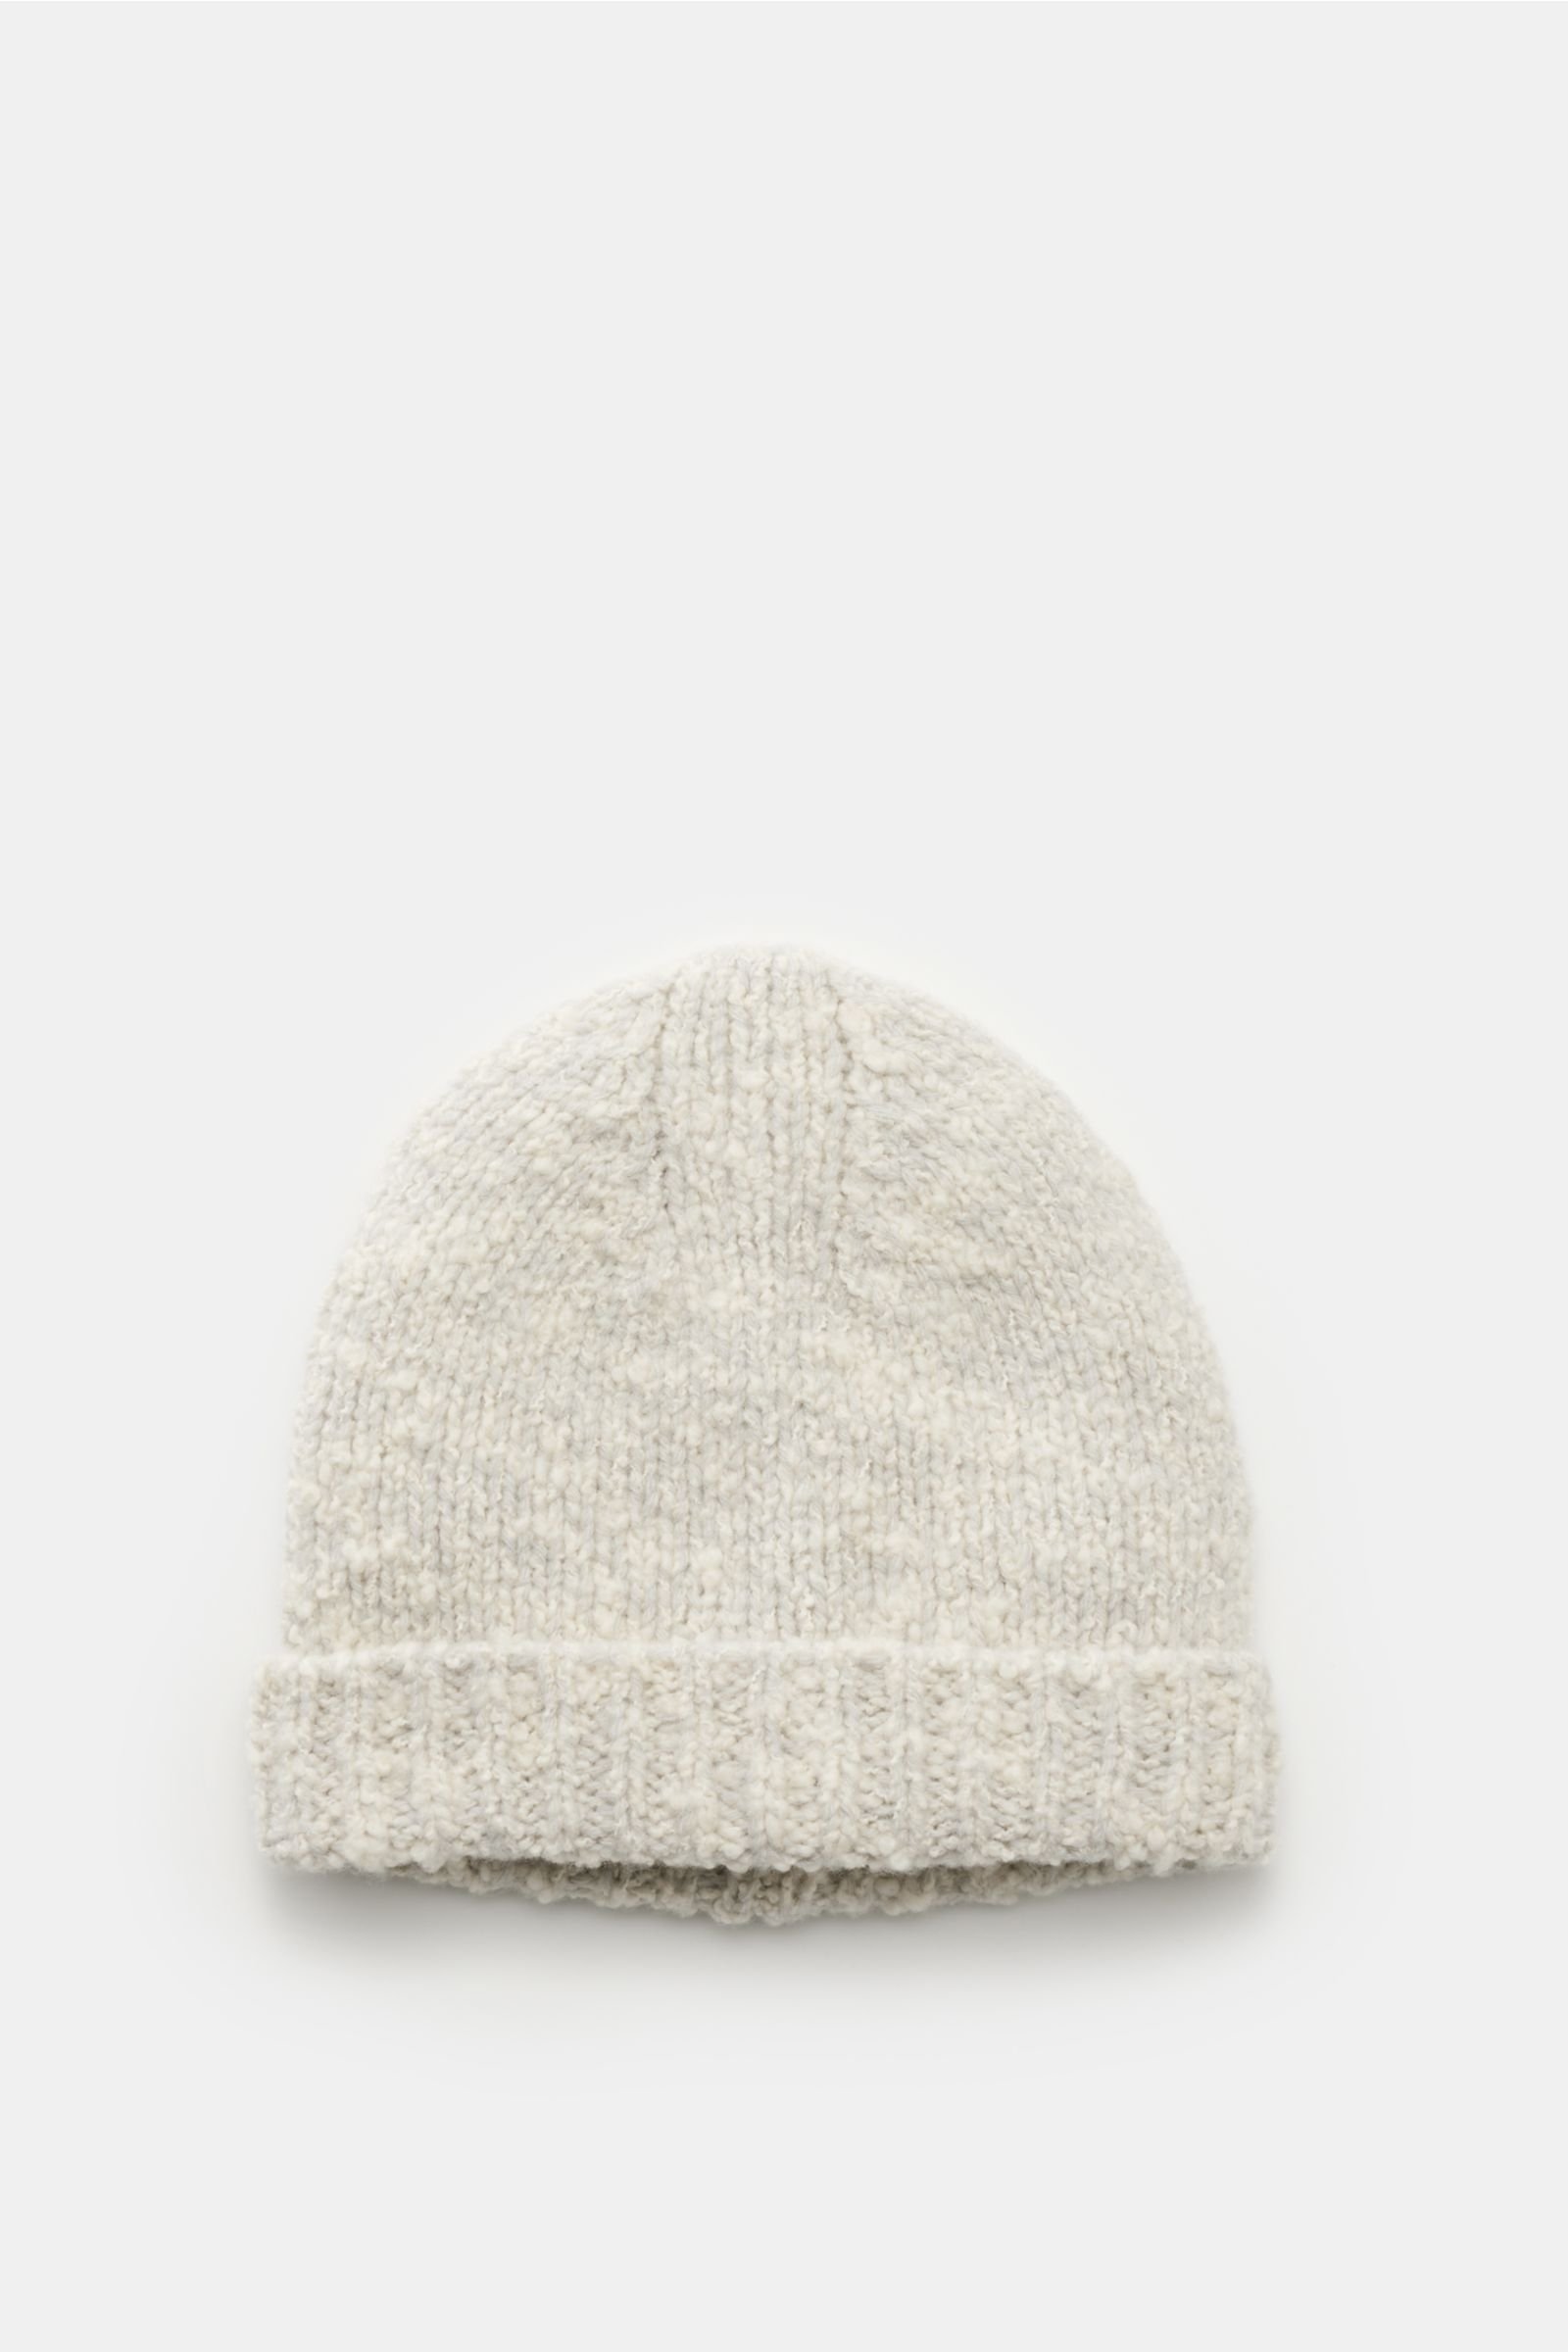 Wool beanie 'Handknit Hat' off-white/light grey